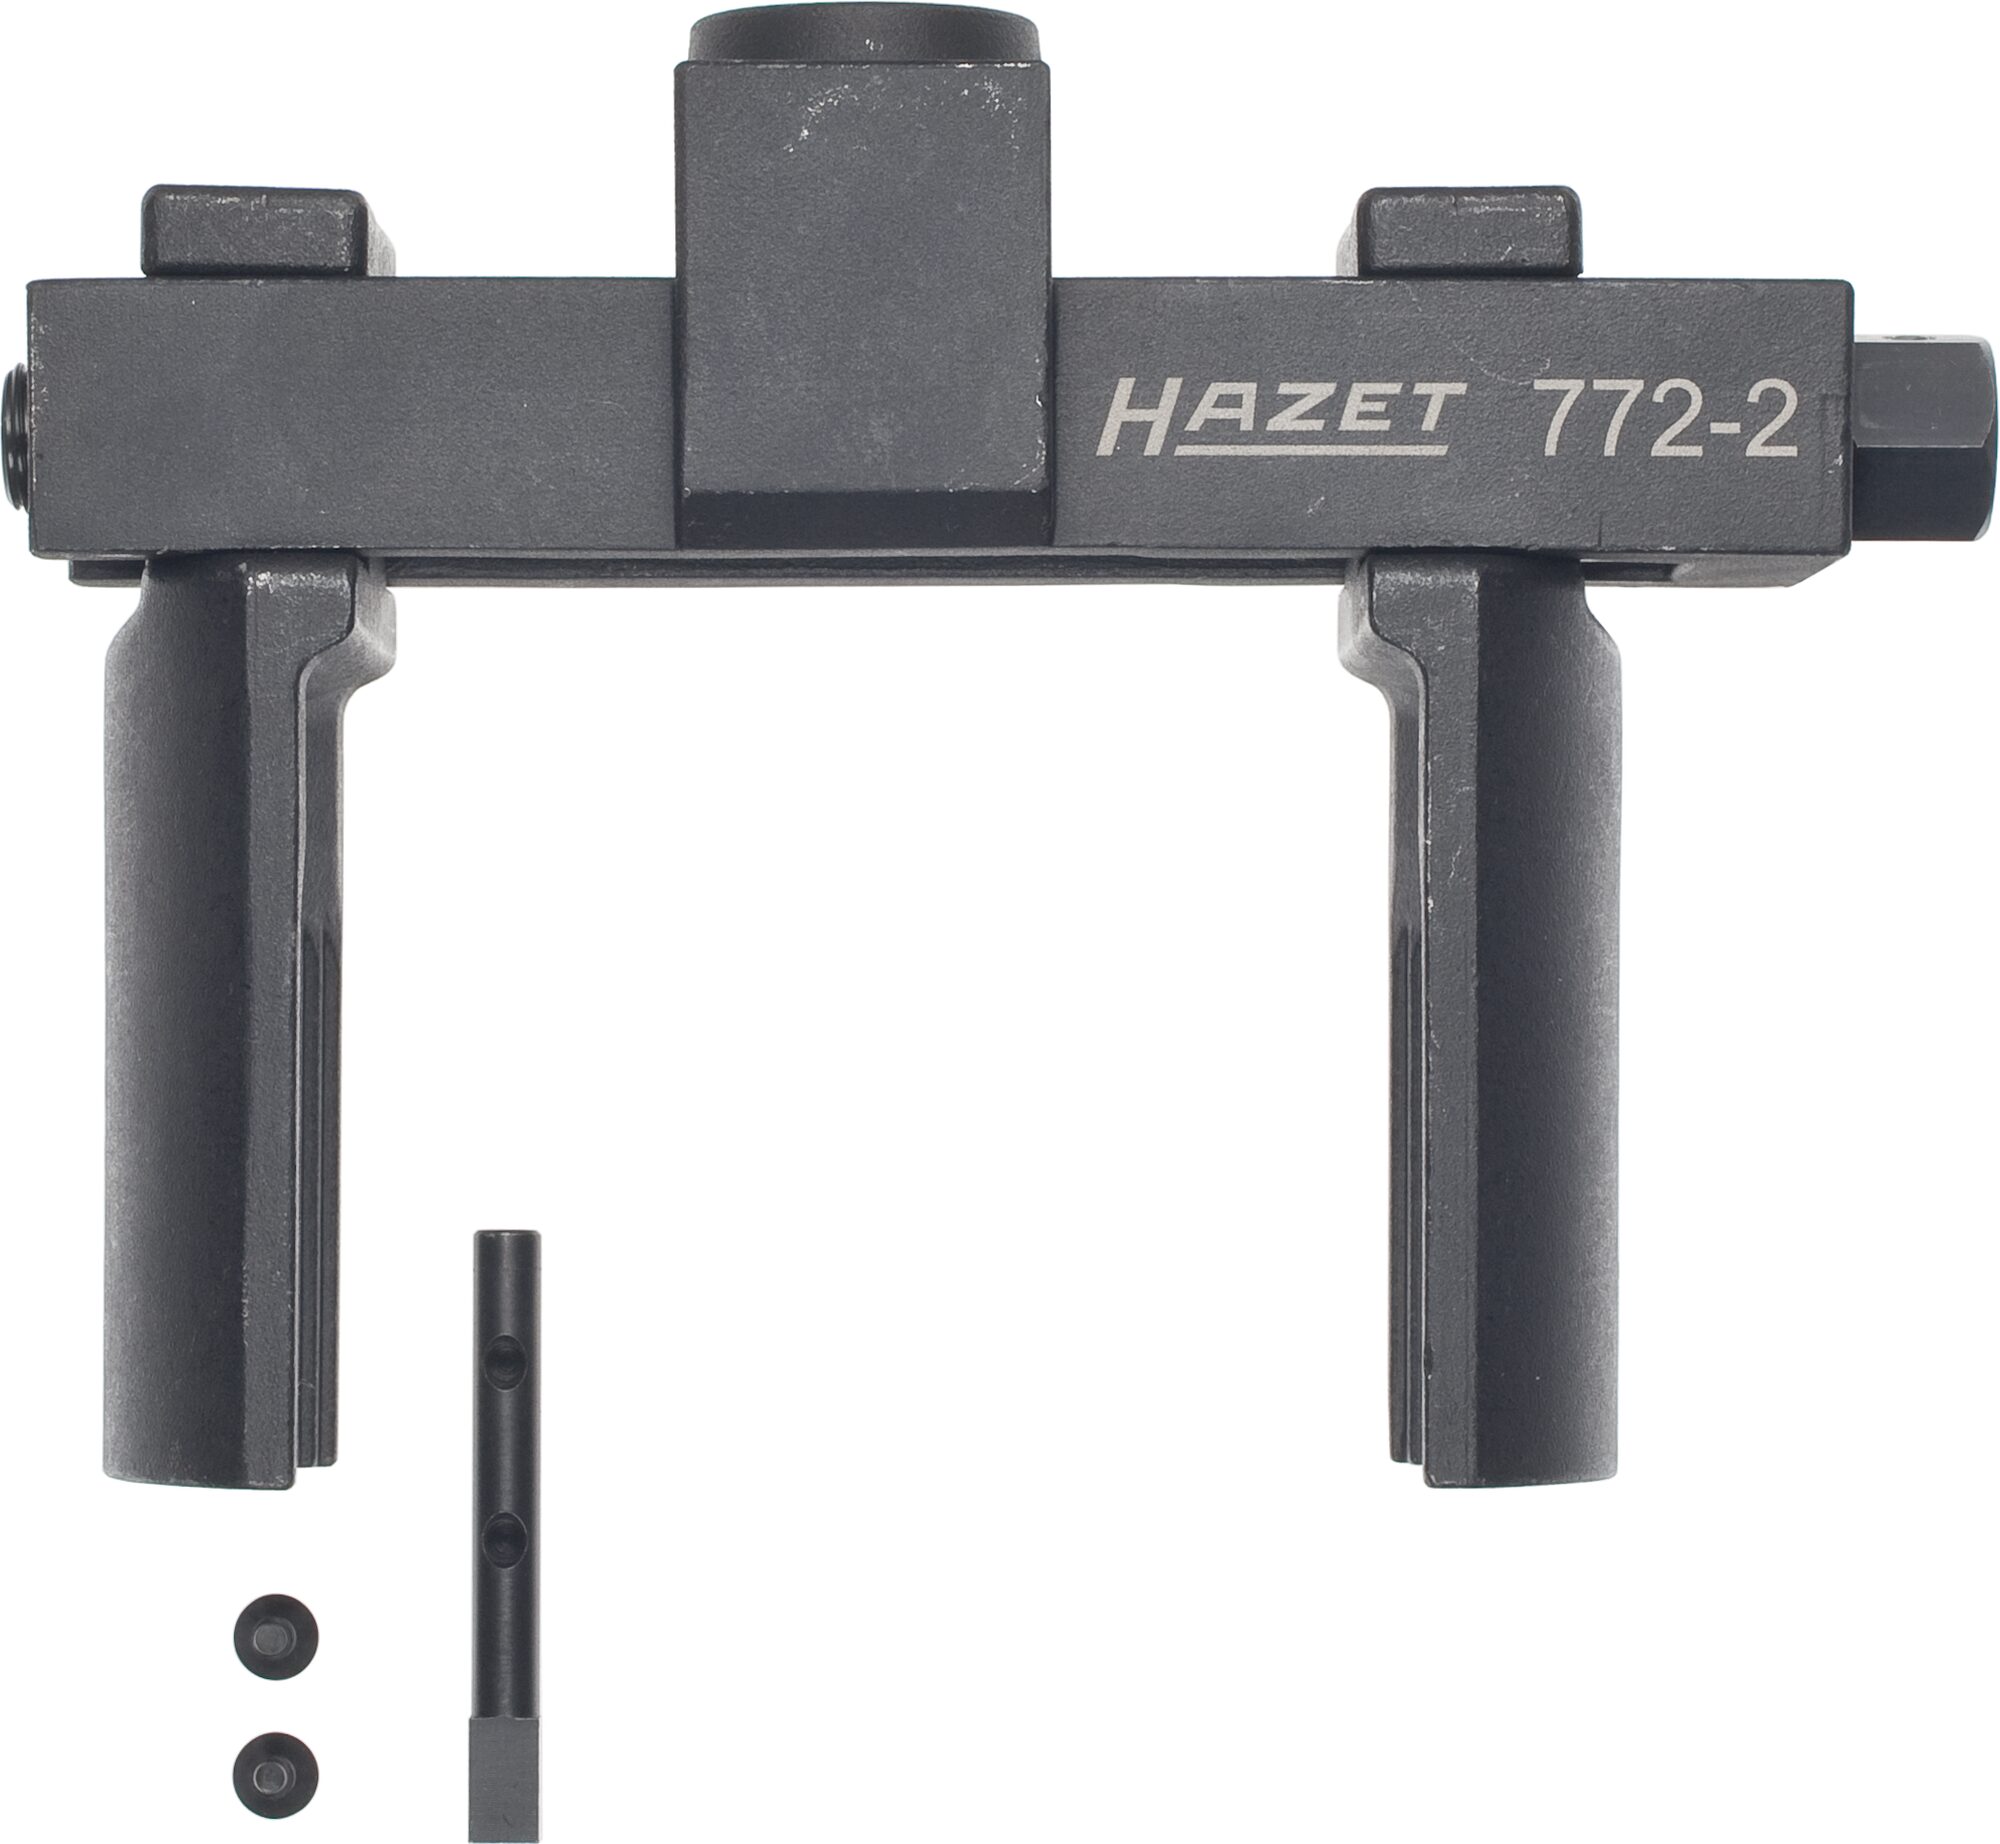 HAZET Universal Achs- und Nutmuttern-Schlüsseleinheit Werkzeug Satz 772-2/16 · Vierkant hohl 20 mm (3/4 Zoll) · Anzahl Werkzeuge: 16